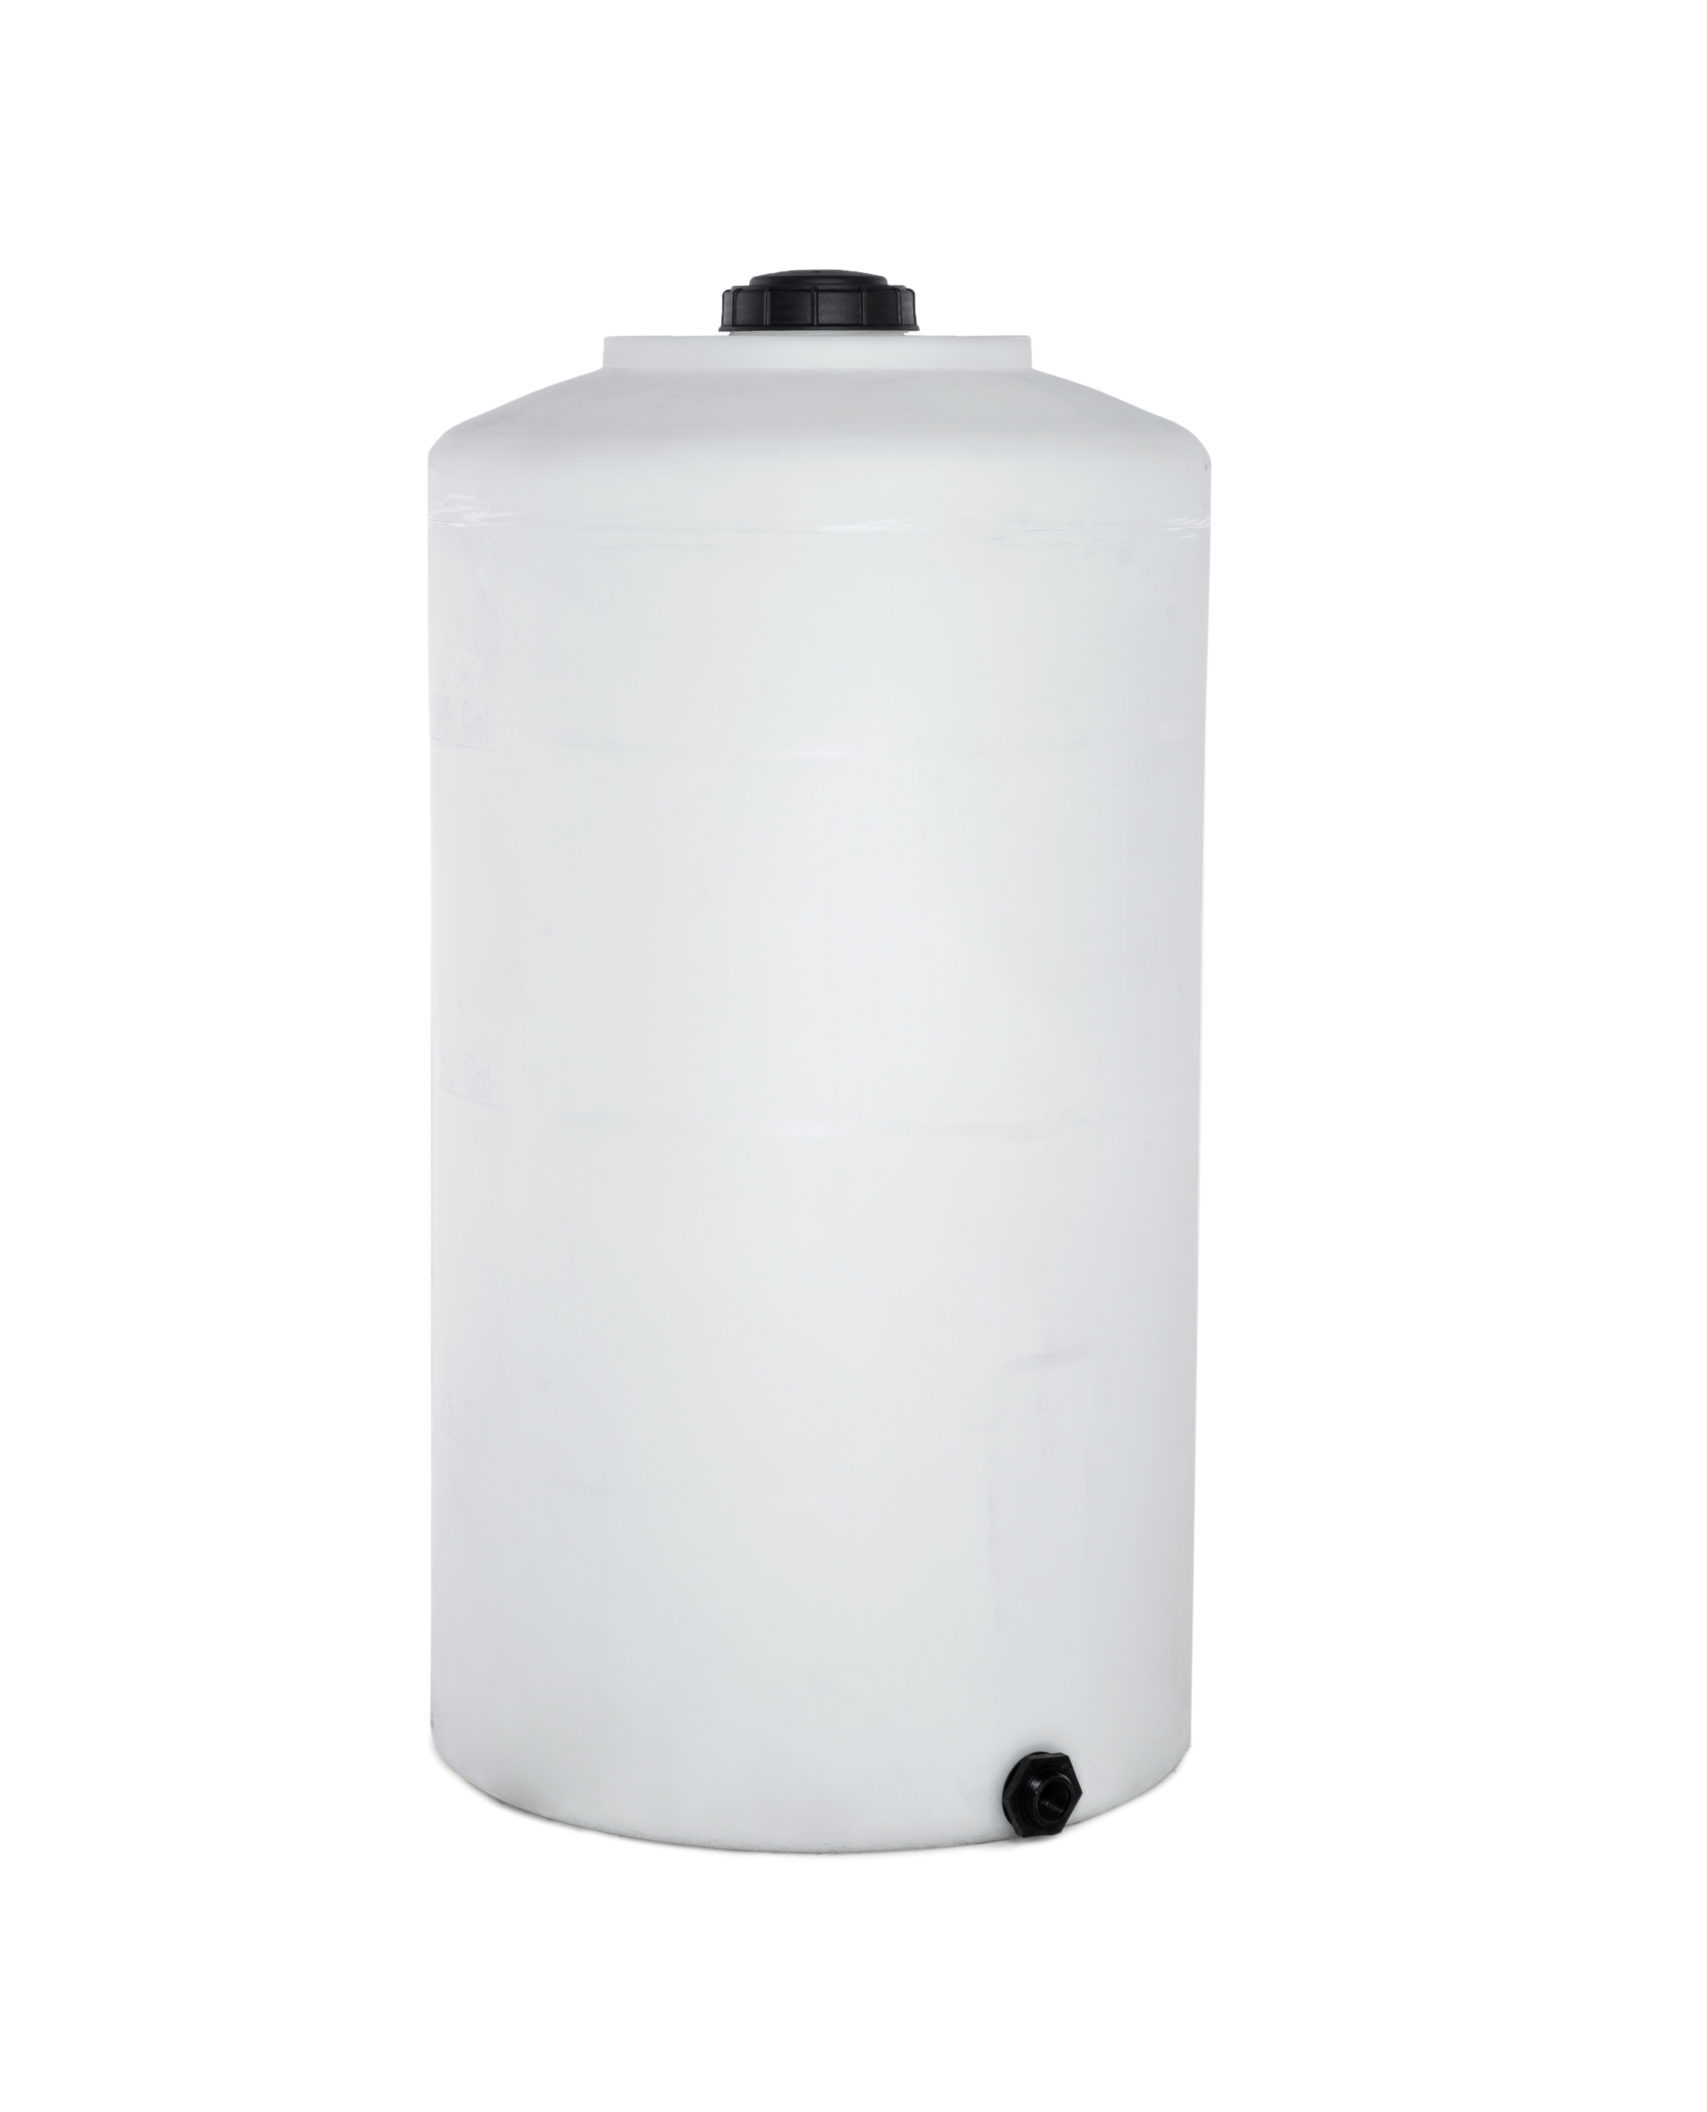 Bushman Water Storage Tank - 100 Gallon